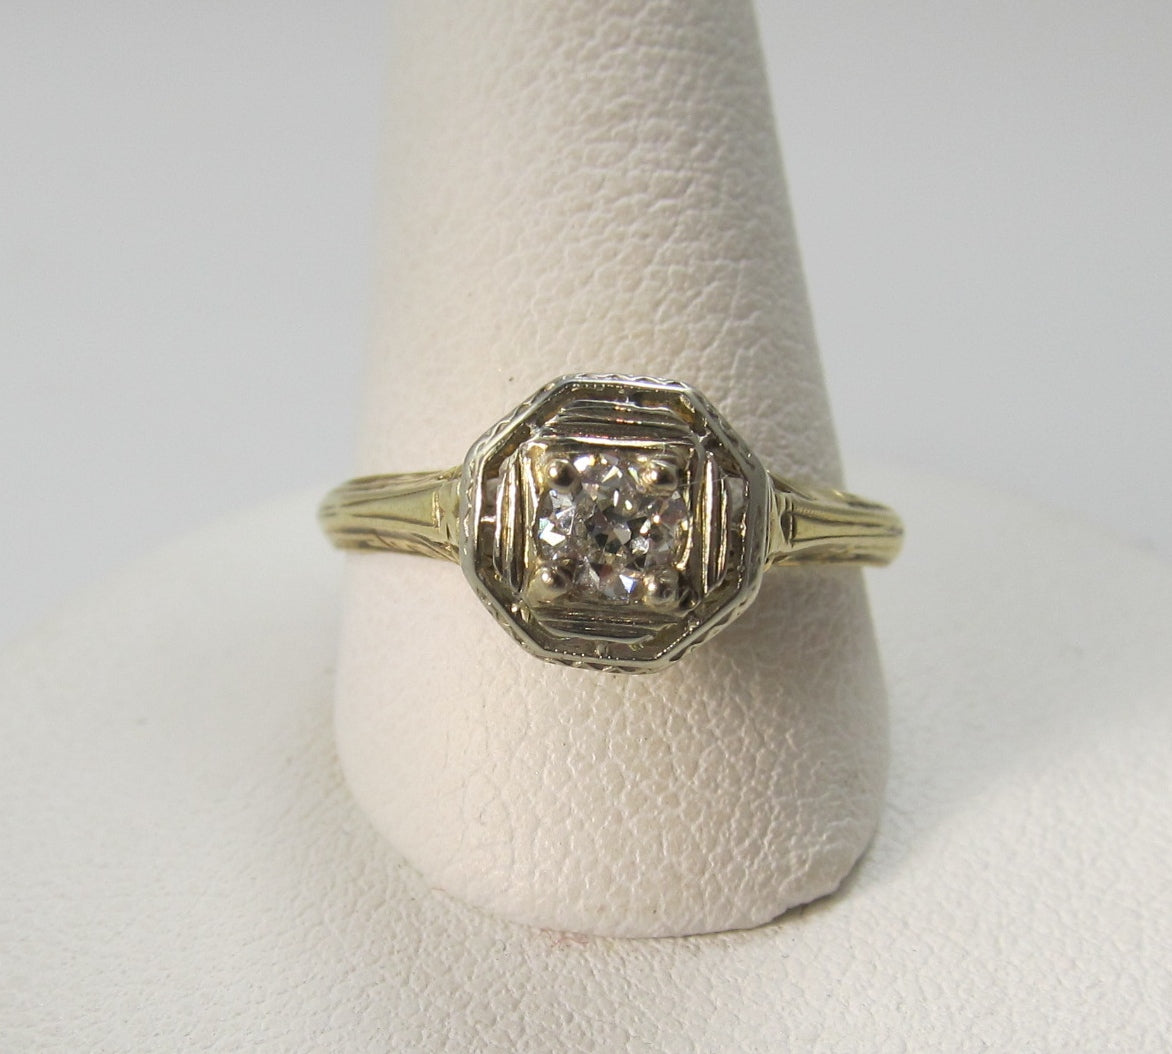 Vintage 14k yellow gold filigree diamond ring